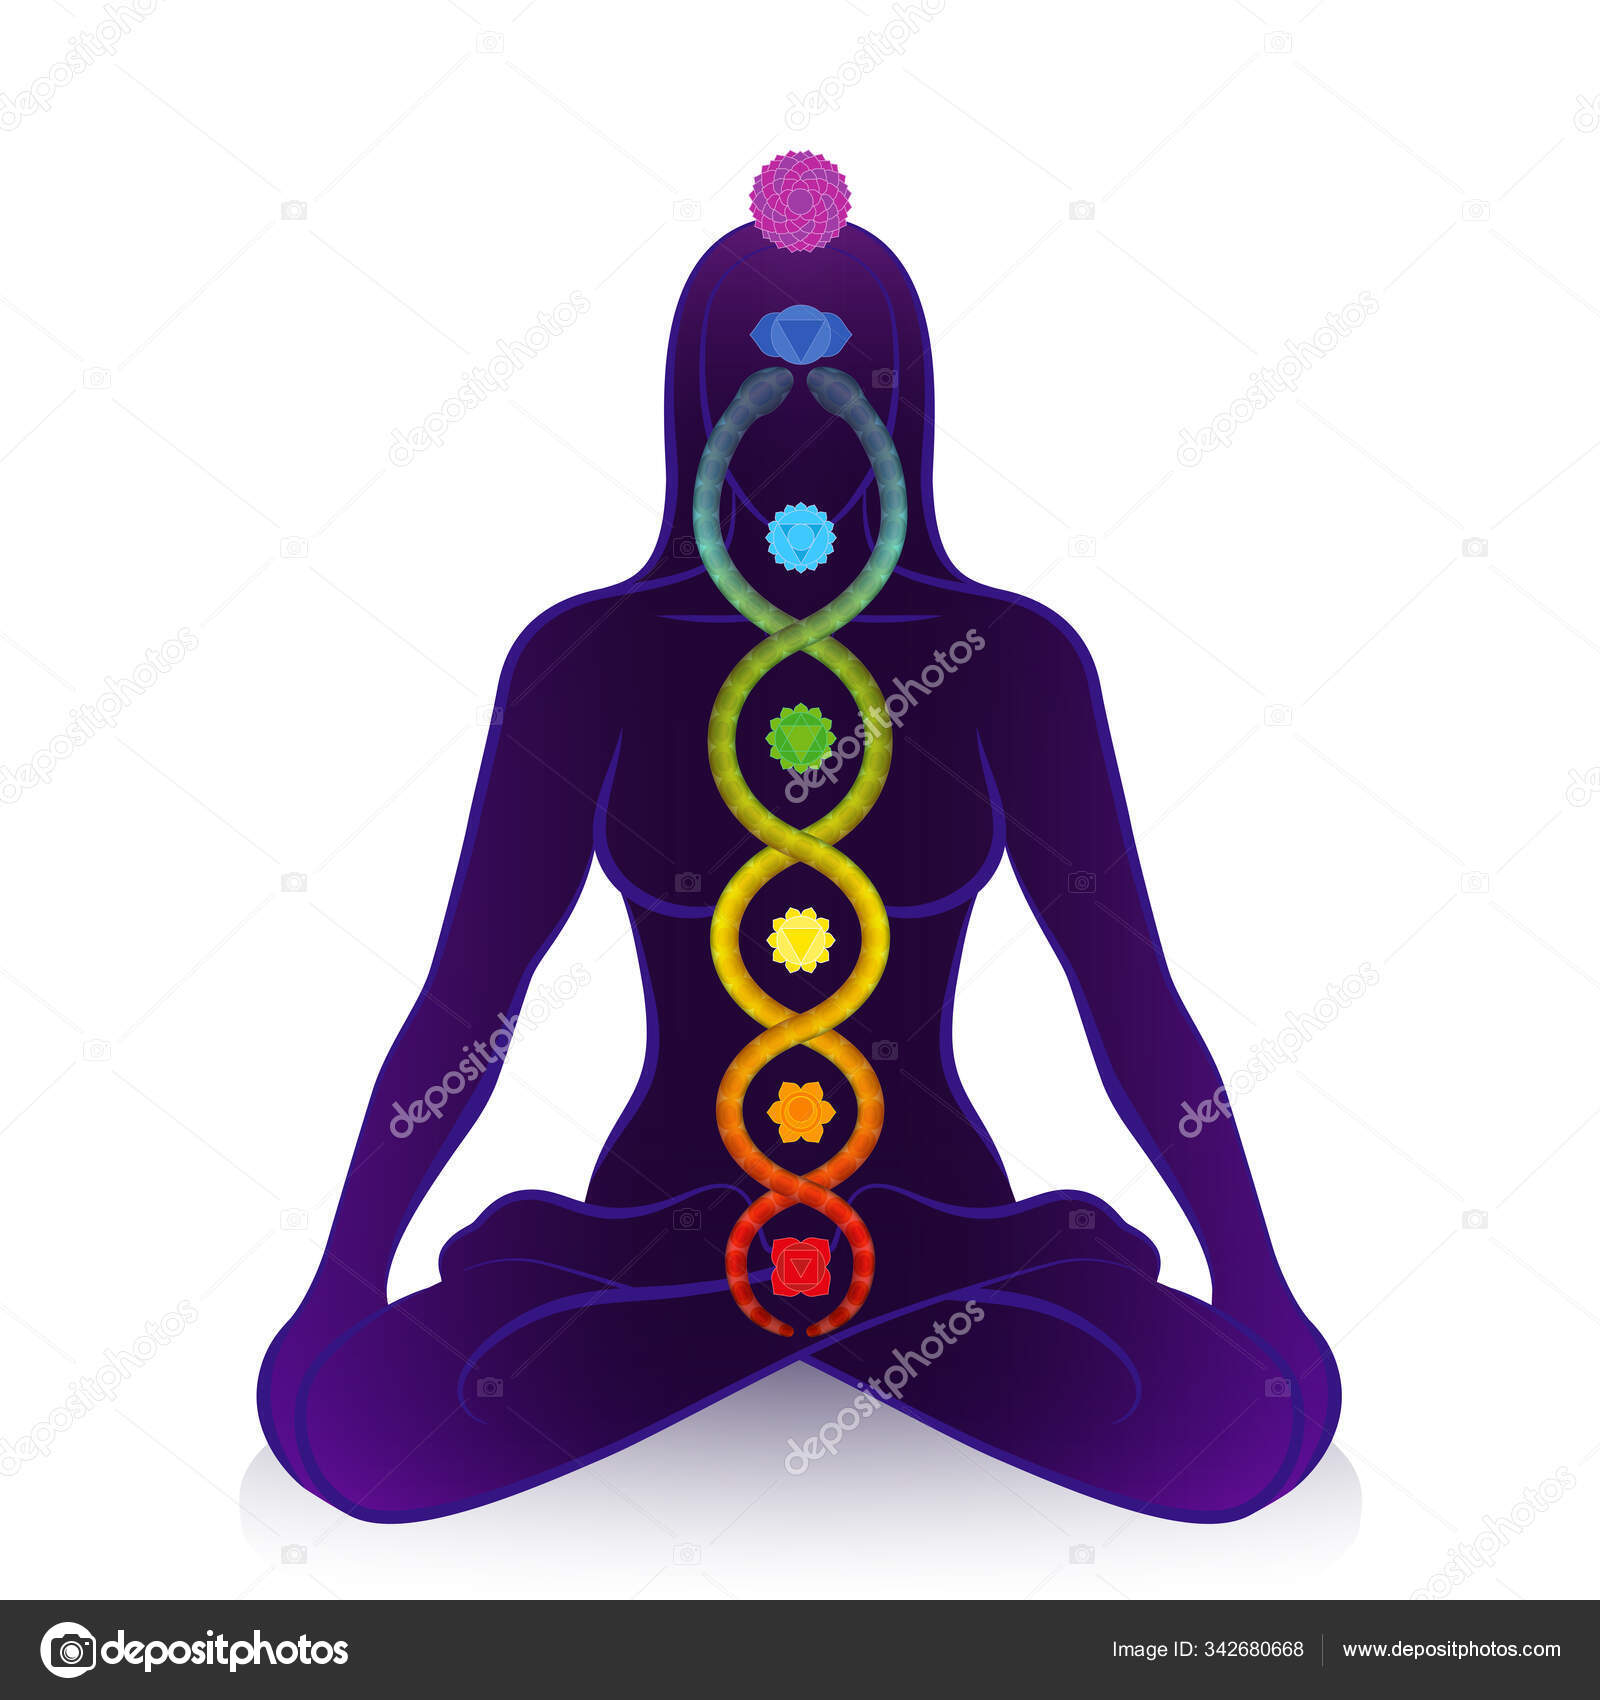 Kundalini serpente e chakras de uma mulher meditando, símbolo para o  despertar espiritual, poder de cura e equilíbrio, harmonia celestial e  relaxamento. Ilustração vetorial sobre branco . imagem vetorial de Furian©  342680668